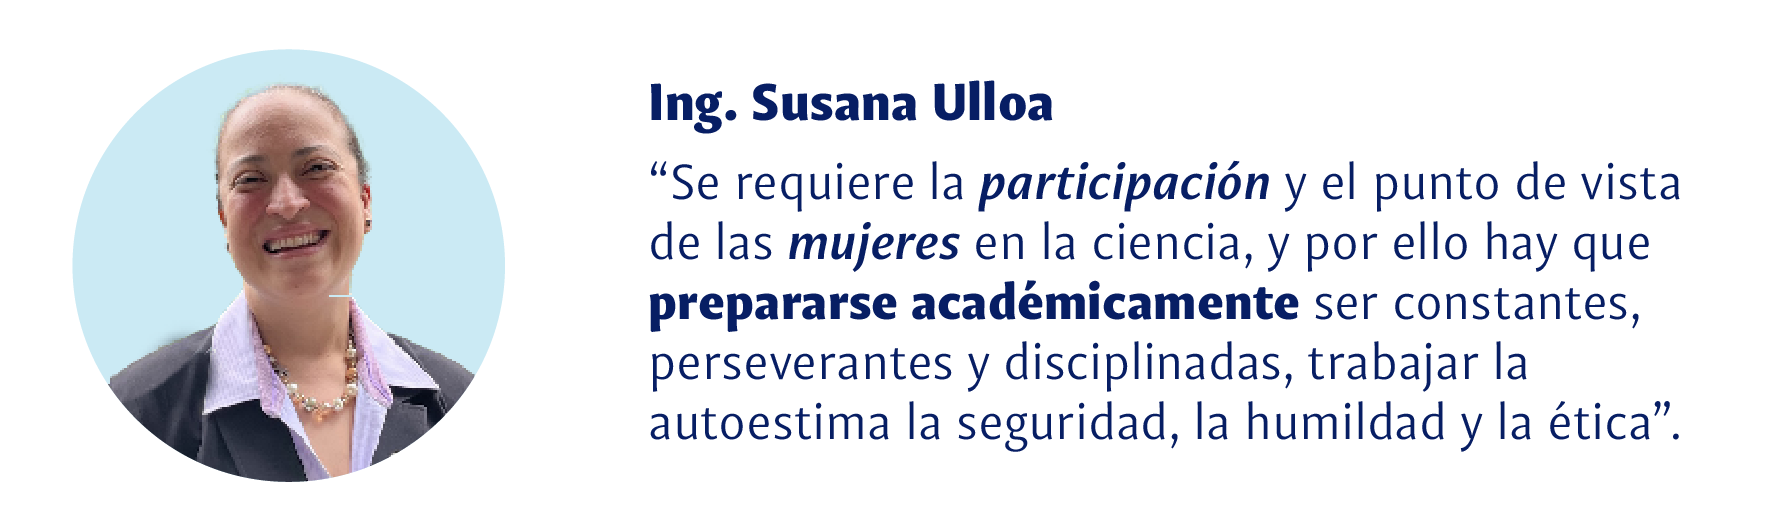 Ing. Susana Ulloa: Se requiere participación y el punto de vista de las mujeres en la ciencia, y por ello hay que prepararse académicamente, ser onstantes, perseverantes y disciplinadas, trabajar la autoestima la seguridad, la humanidad y la ética.